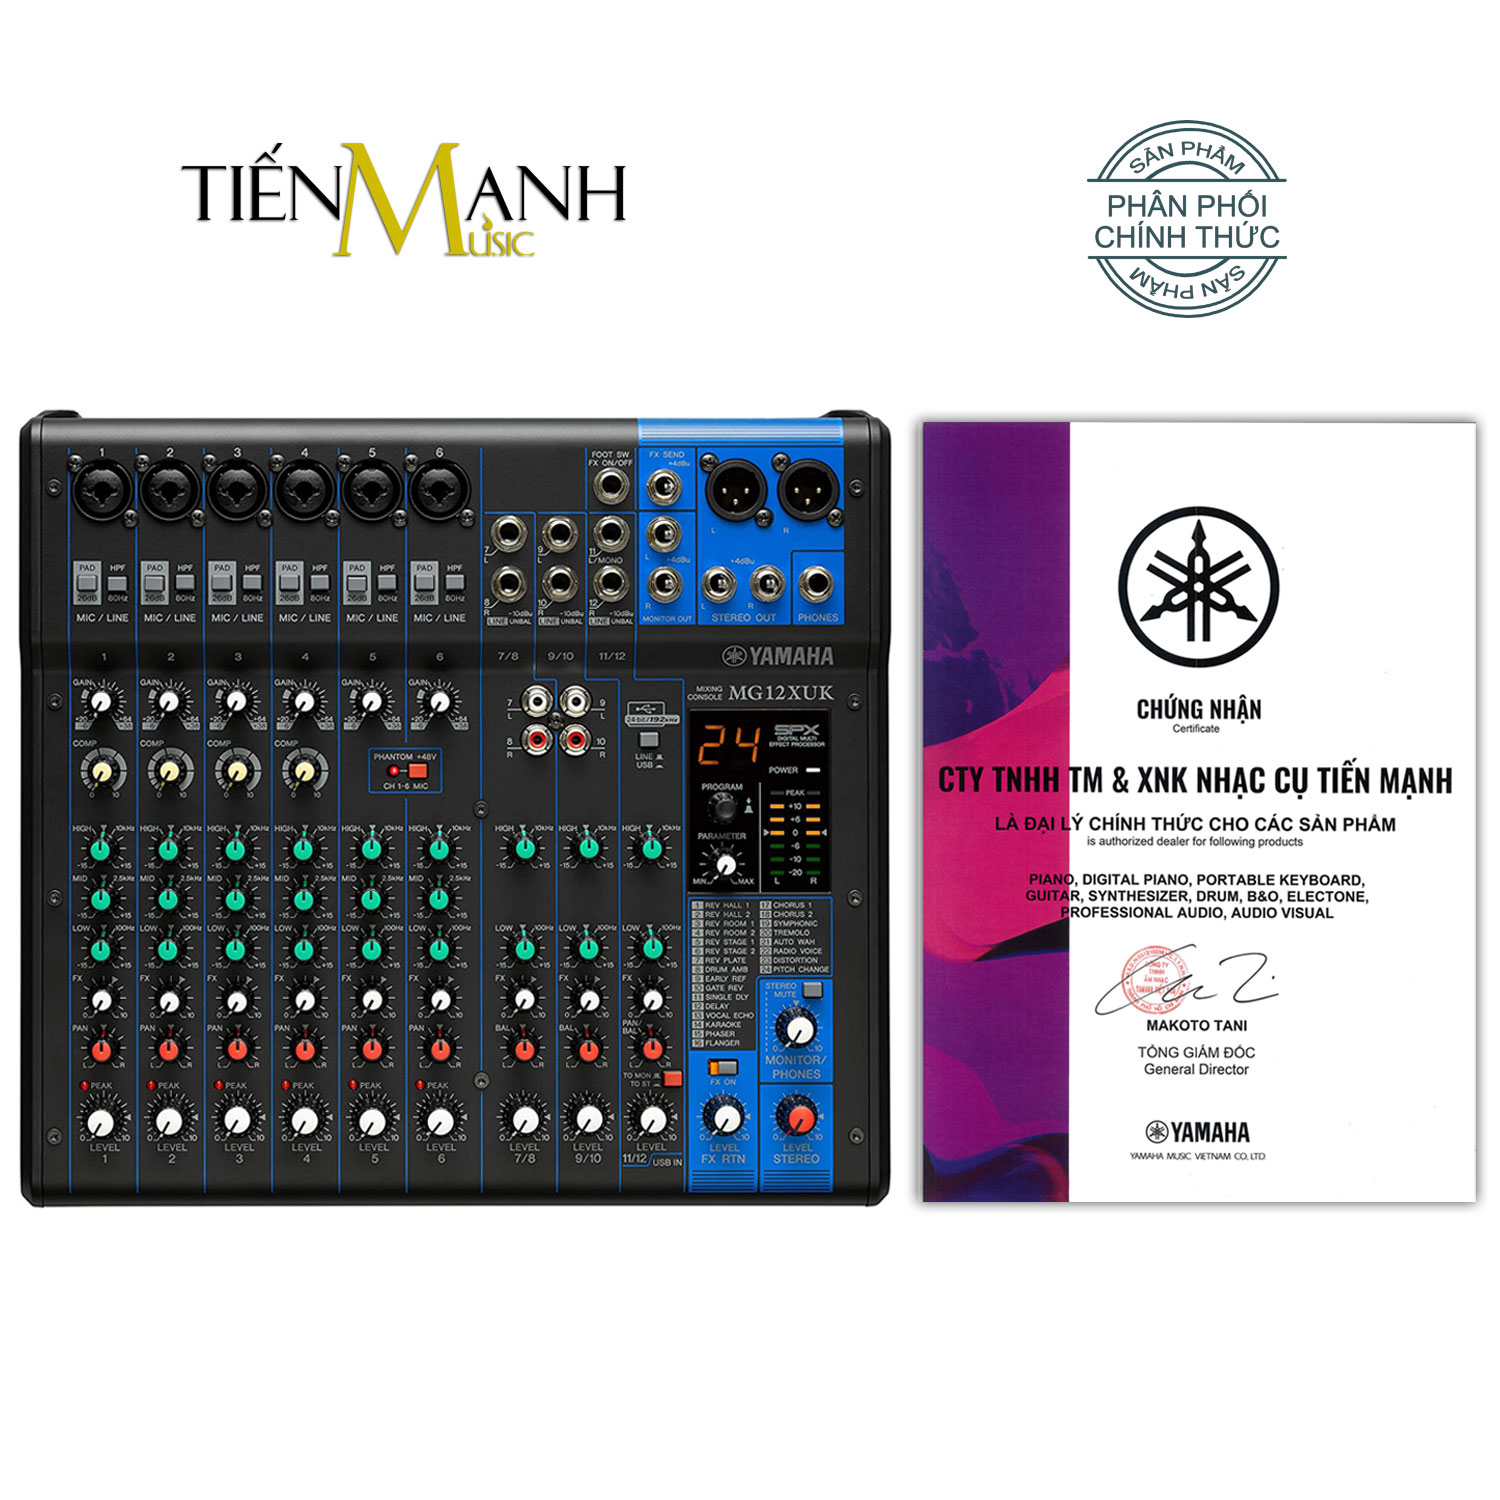 Yamaha MG12XUK Soundcard kiêm Bàn Trộn Mixer Interface Compact Stereo Mixing Console Phòng Thu Studio Mix MG12